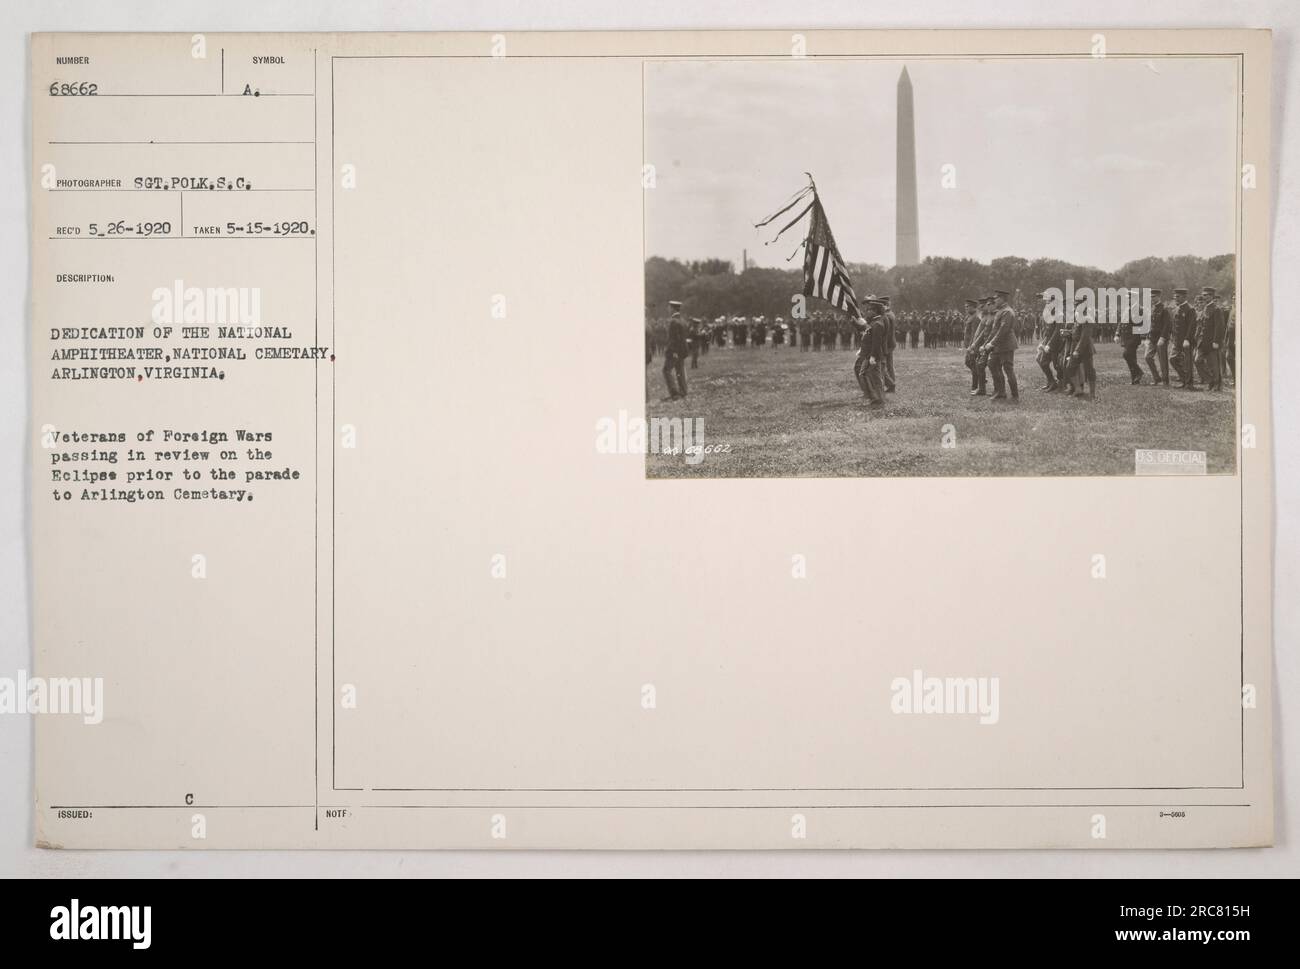 Gene McKinley (à gauche) et le général John J. Pershing (au centre) conduisent les vétérans des guerres étrangères dans un défilé sur l'Ellipse à Arlington, en Virginie, avant la cérémonie d'inauguration de l'amphithéâtre national au cimetière d'Arlington. 15 mai 1920. Banque D'Images